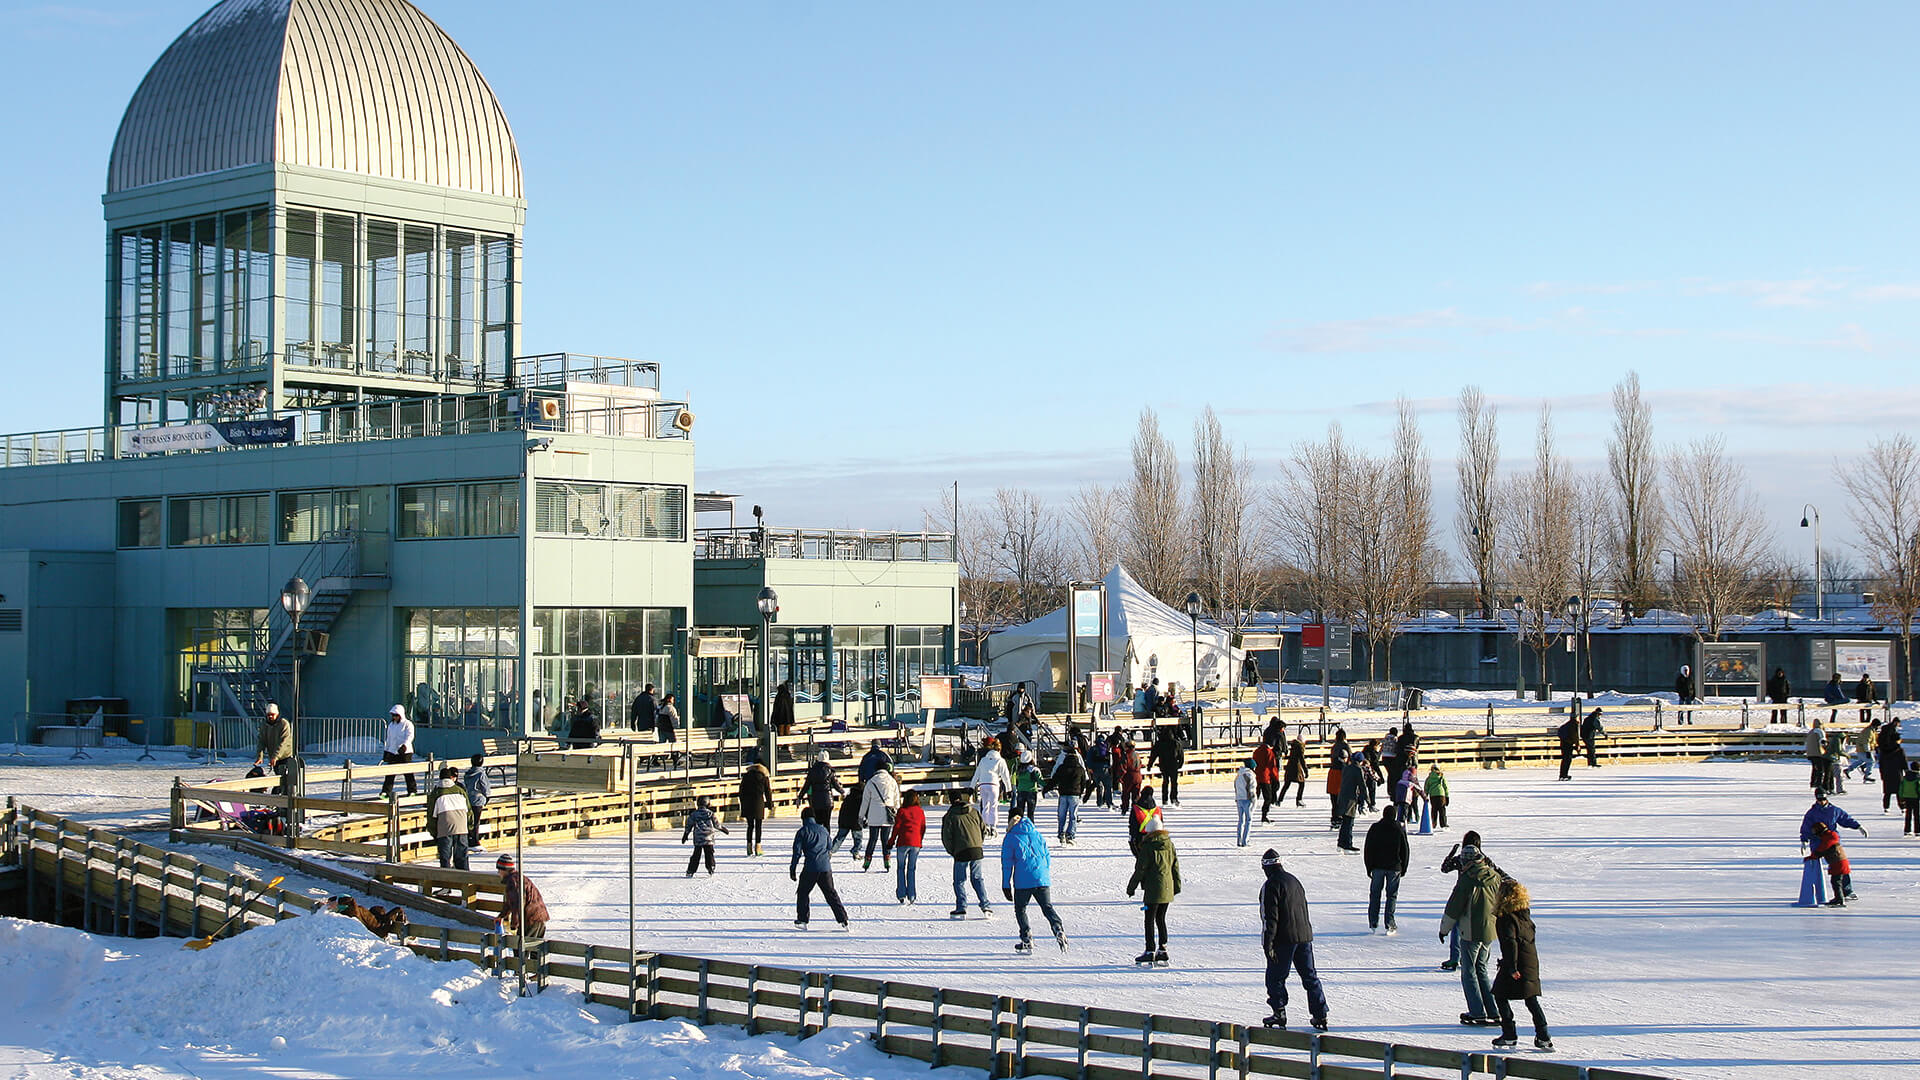 Des personnes de différents âges font du patin à glace sur une grande patinoire extérieure à côté d'un bâtiment moderne sous un ciel bleu dégagé.